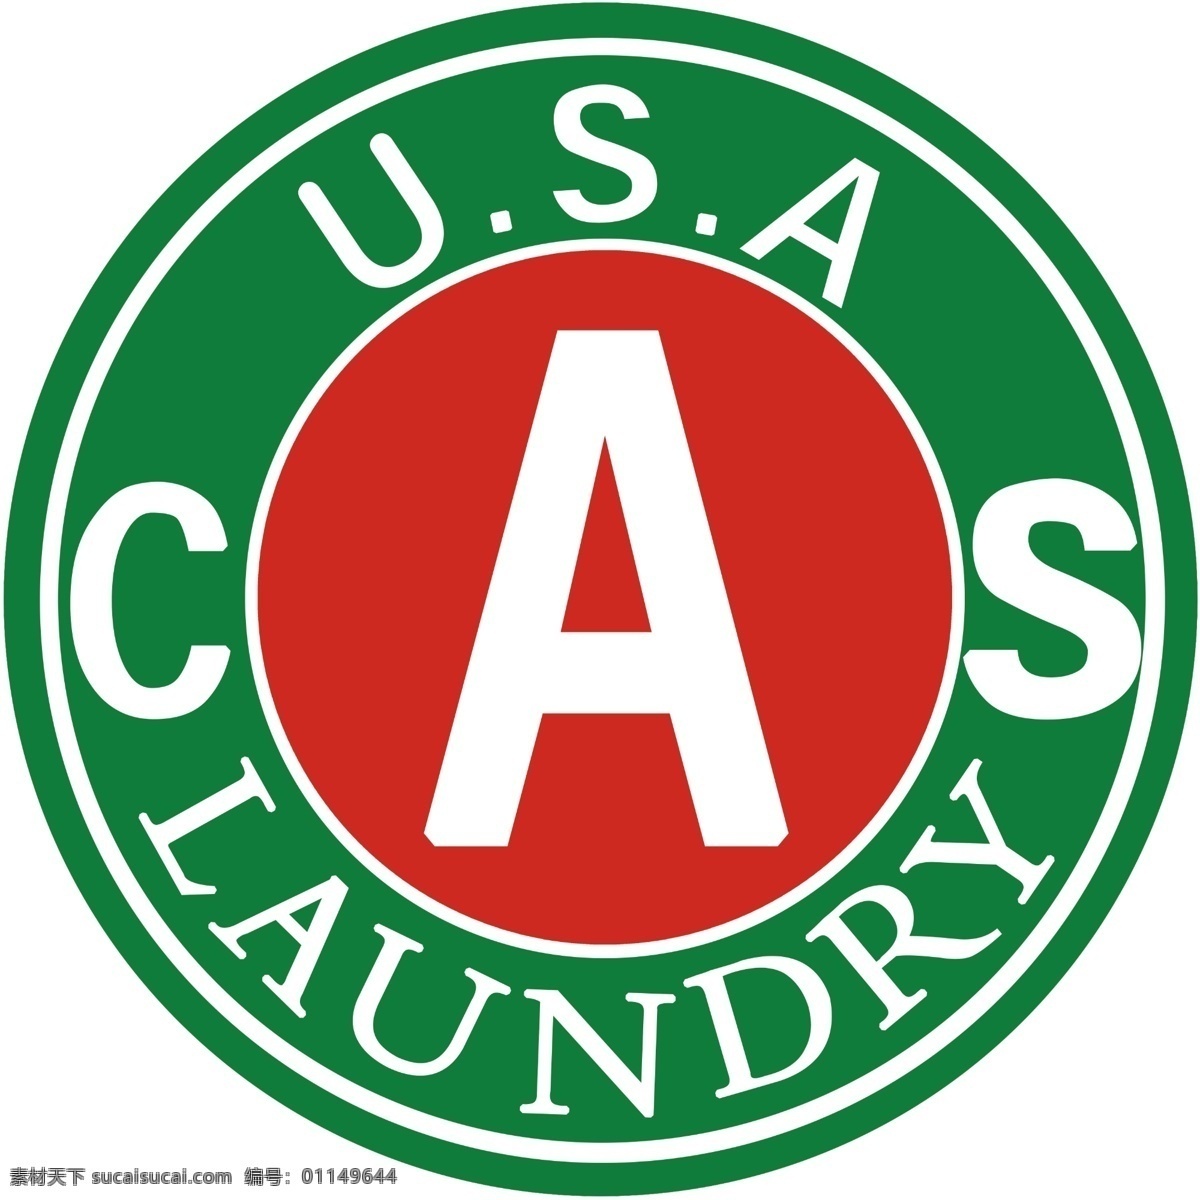 美国 cas 干洗 标 干洗标志 cas汽车 干洗cas logo 标志设计 广告设计模板 源文件